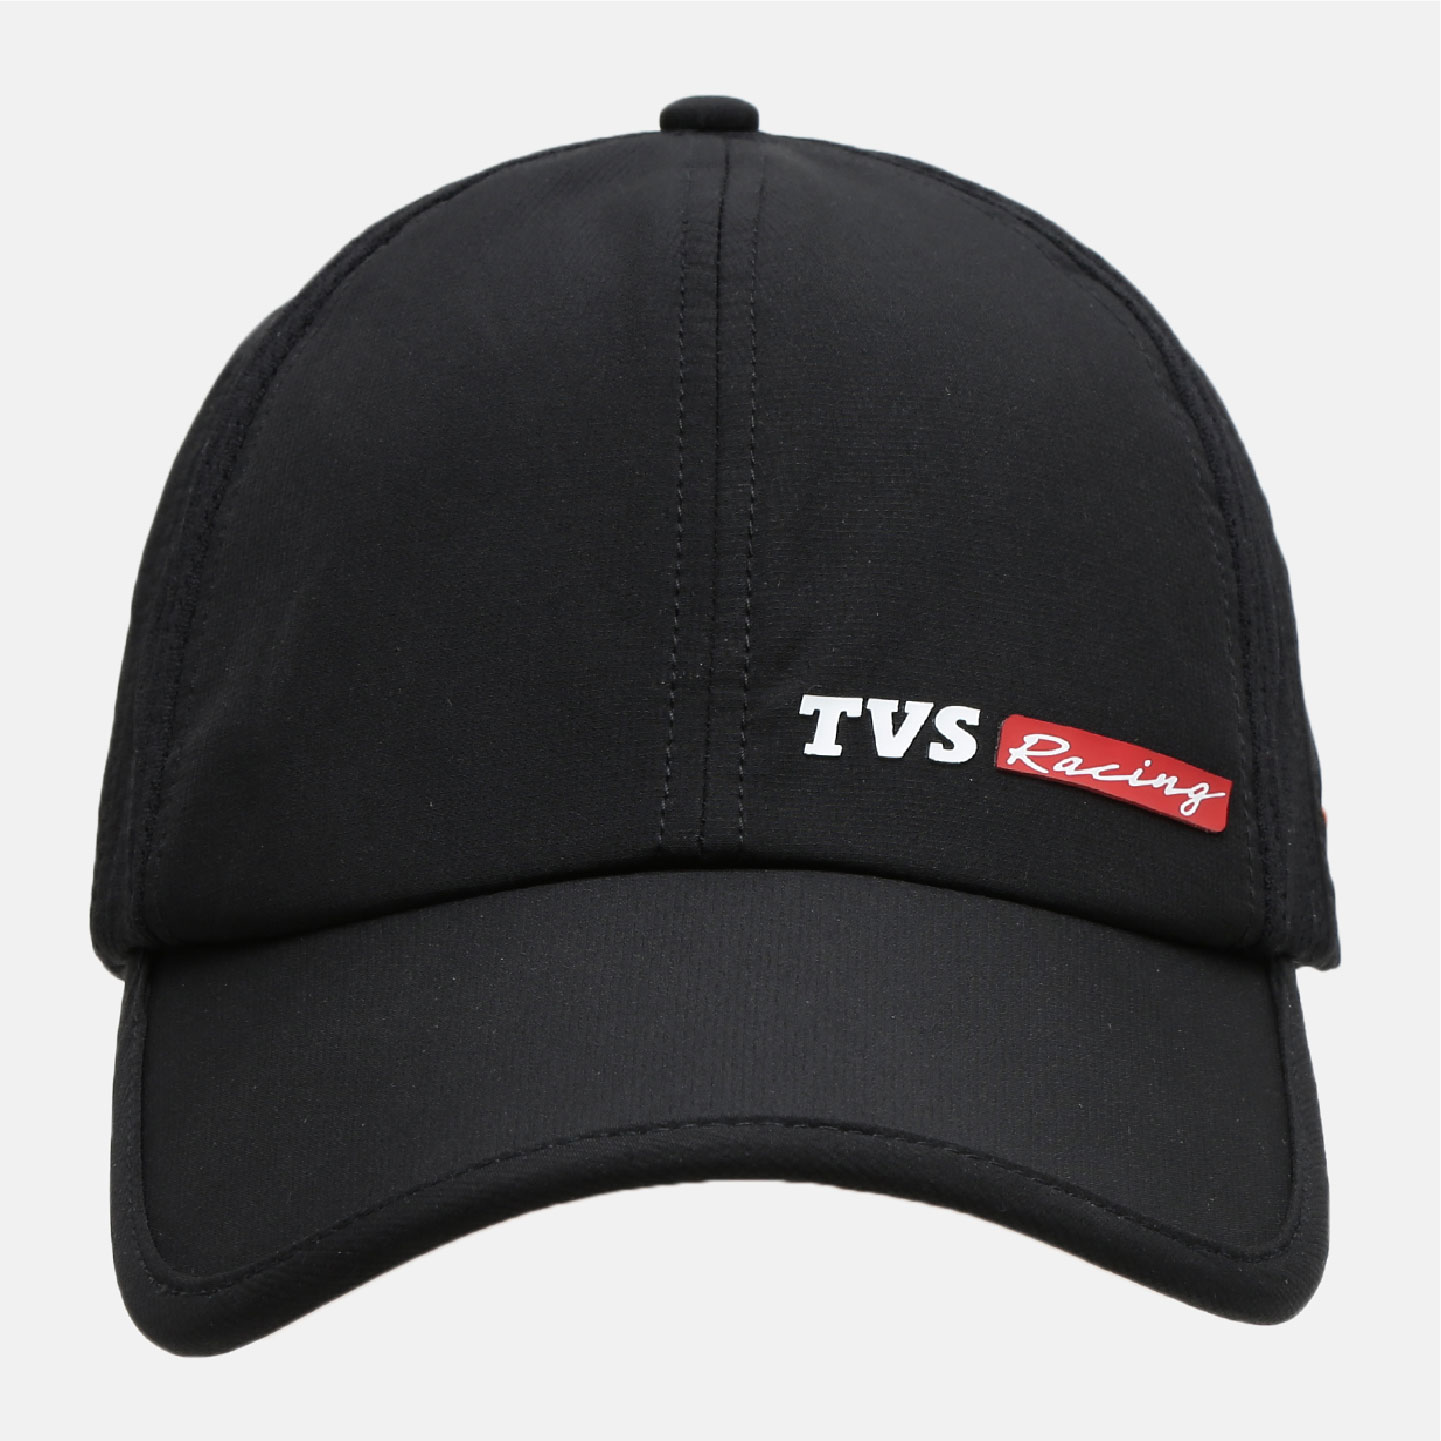  TVS Racing Cap - Red